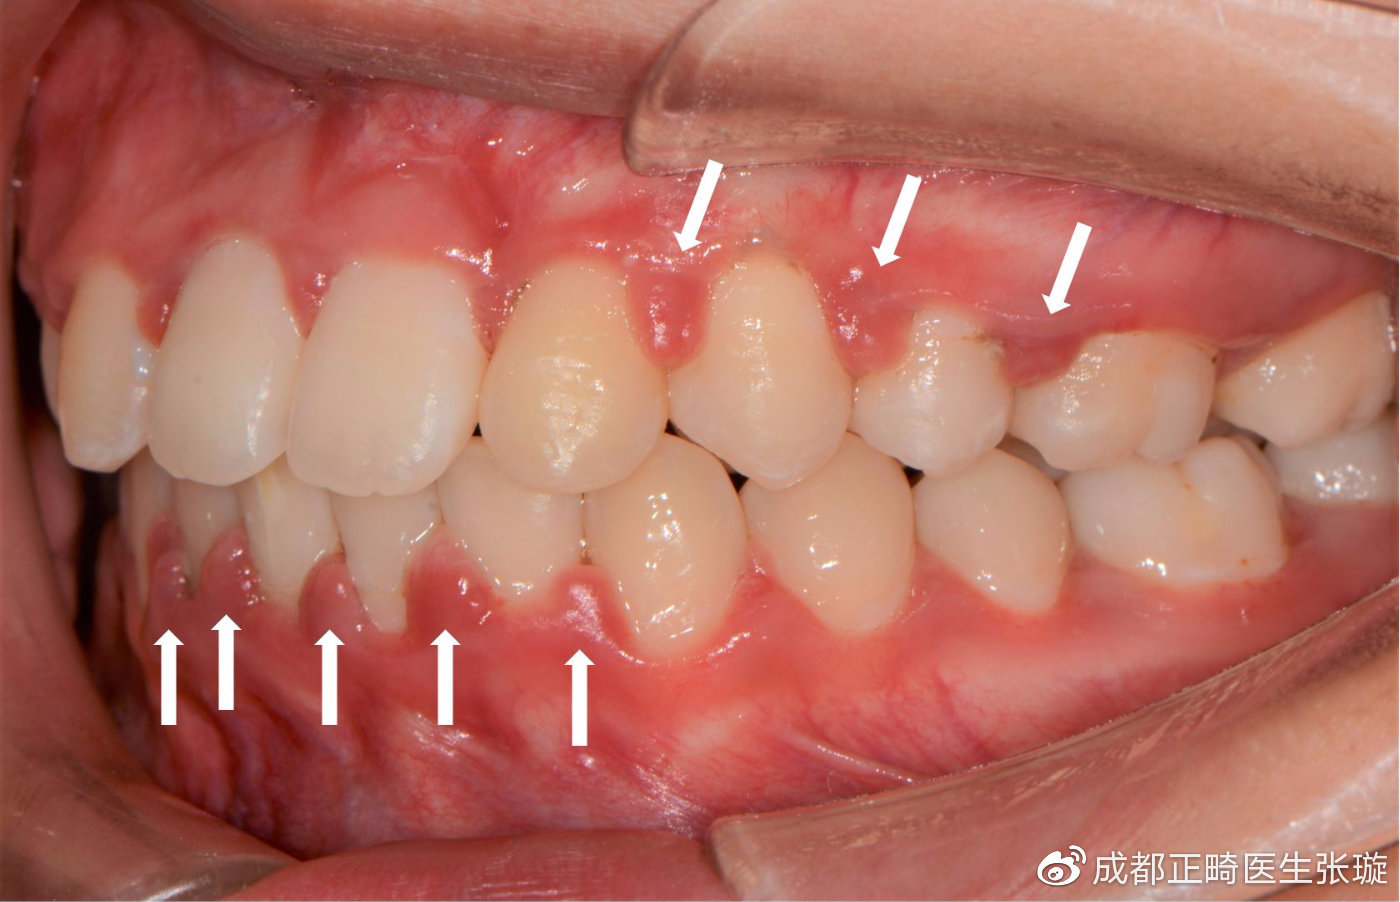 白色箭头所指就是严重增生的牙龈乳头,轻碰即出血